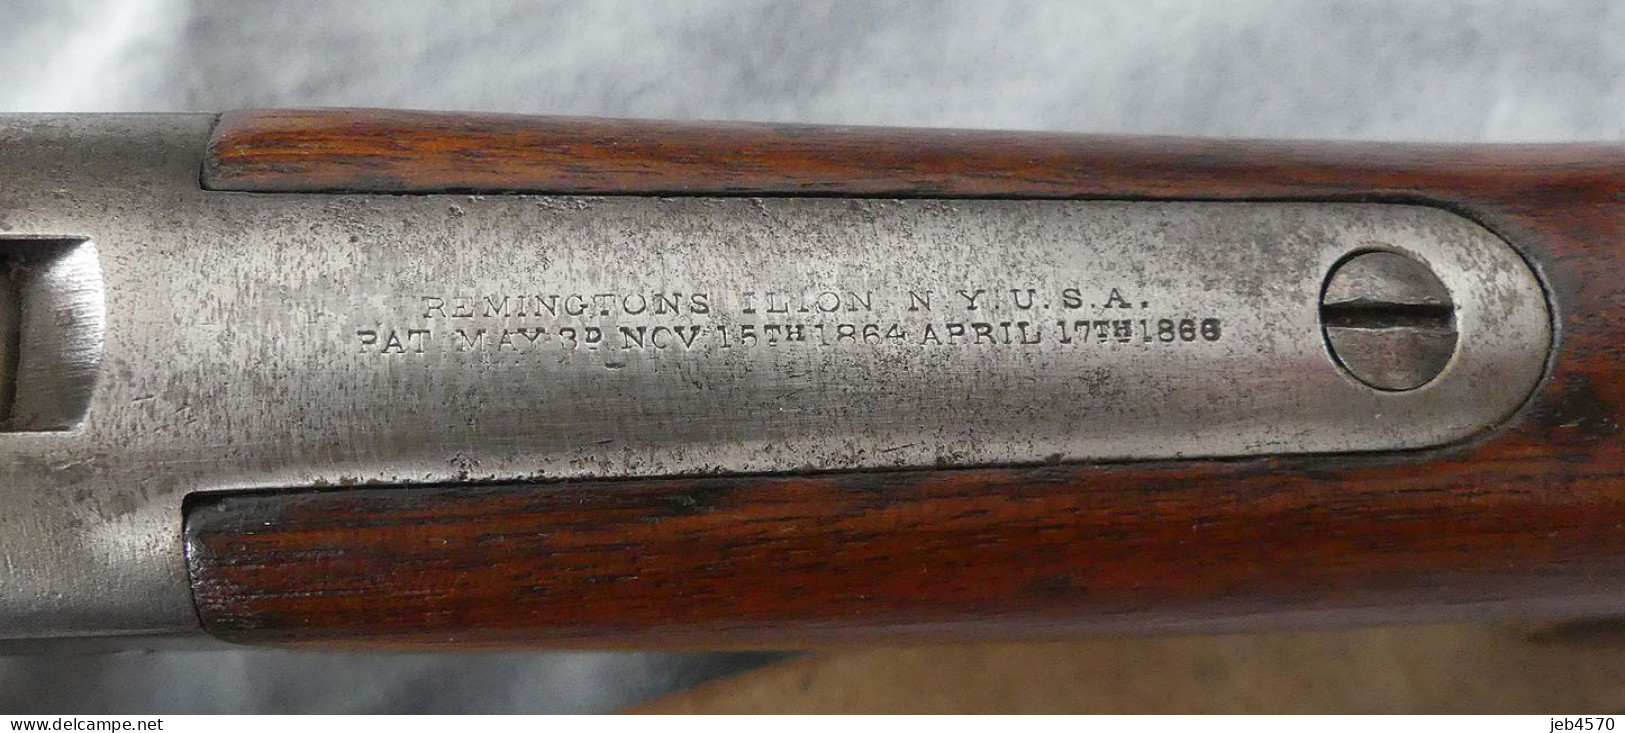 Remington rolling block Défense nationale calibre 43 contrat égyptien modéle 1864/66